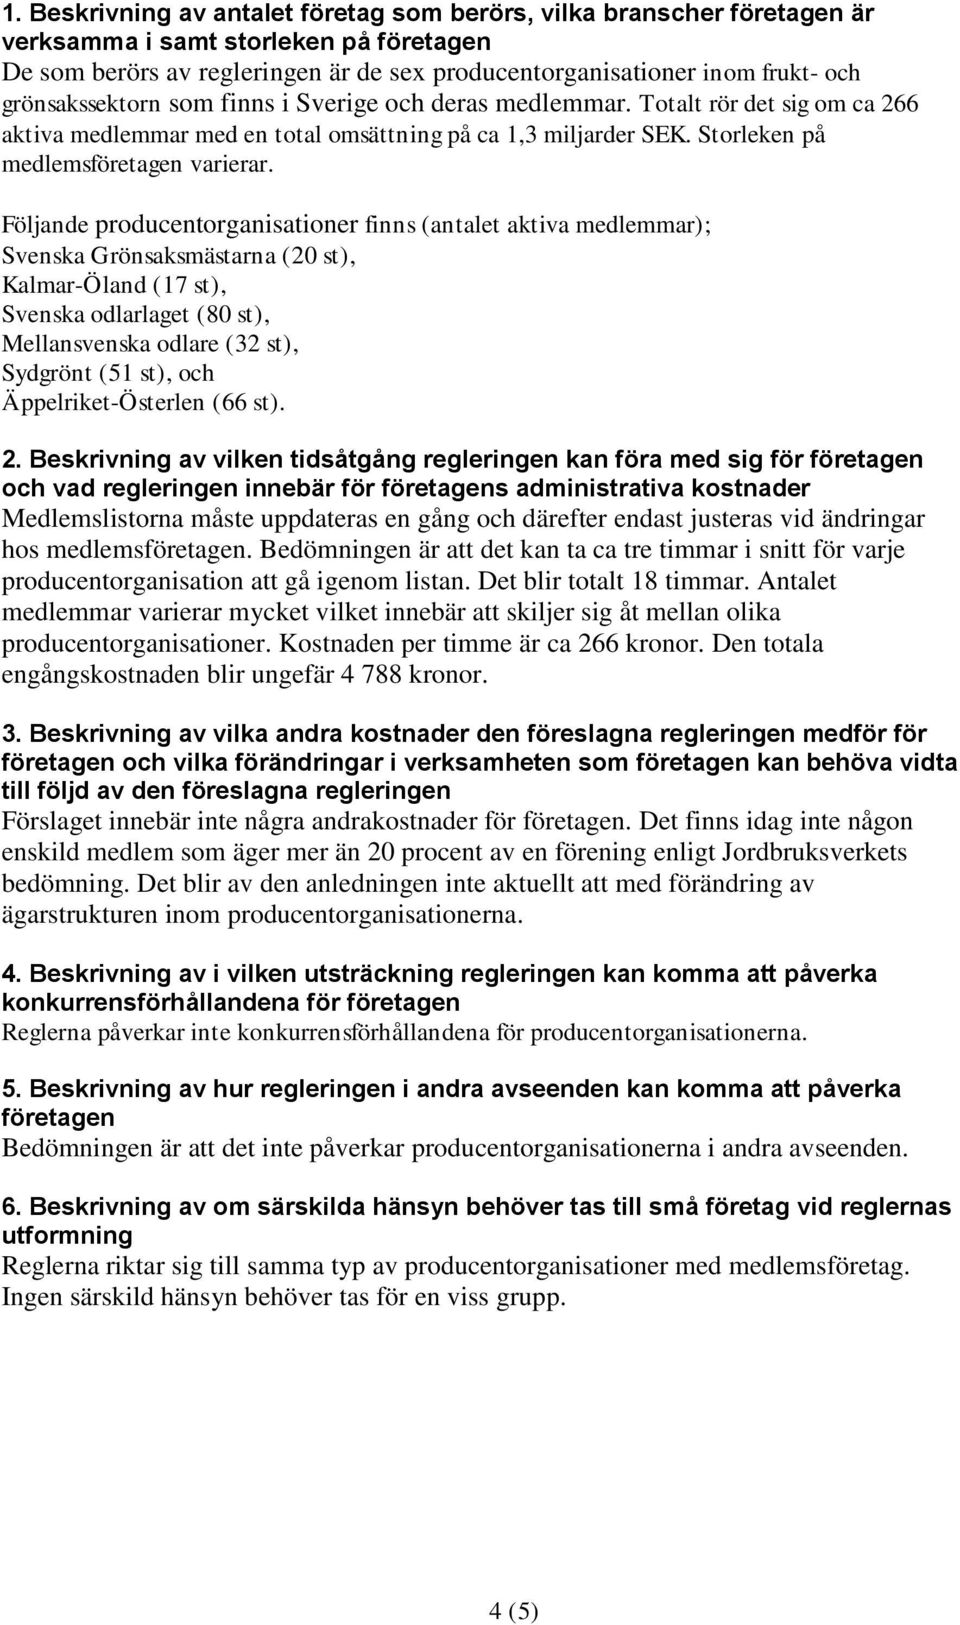 Följande producentorganisationer finns (antalet aktiva medlemmar); Svenska Grönsaksmästarna (20 st), Kalmar-Öland (17 st), Svenska odlarlaget (80 st), Mellansvenska odlare (32 st), Sydgrönt (51 st),